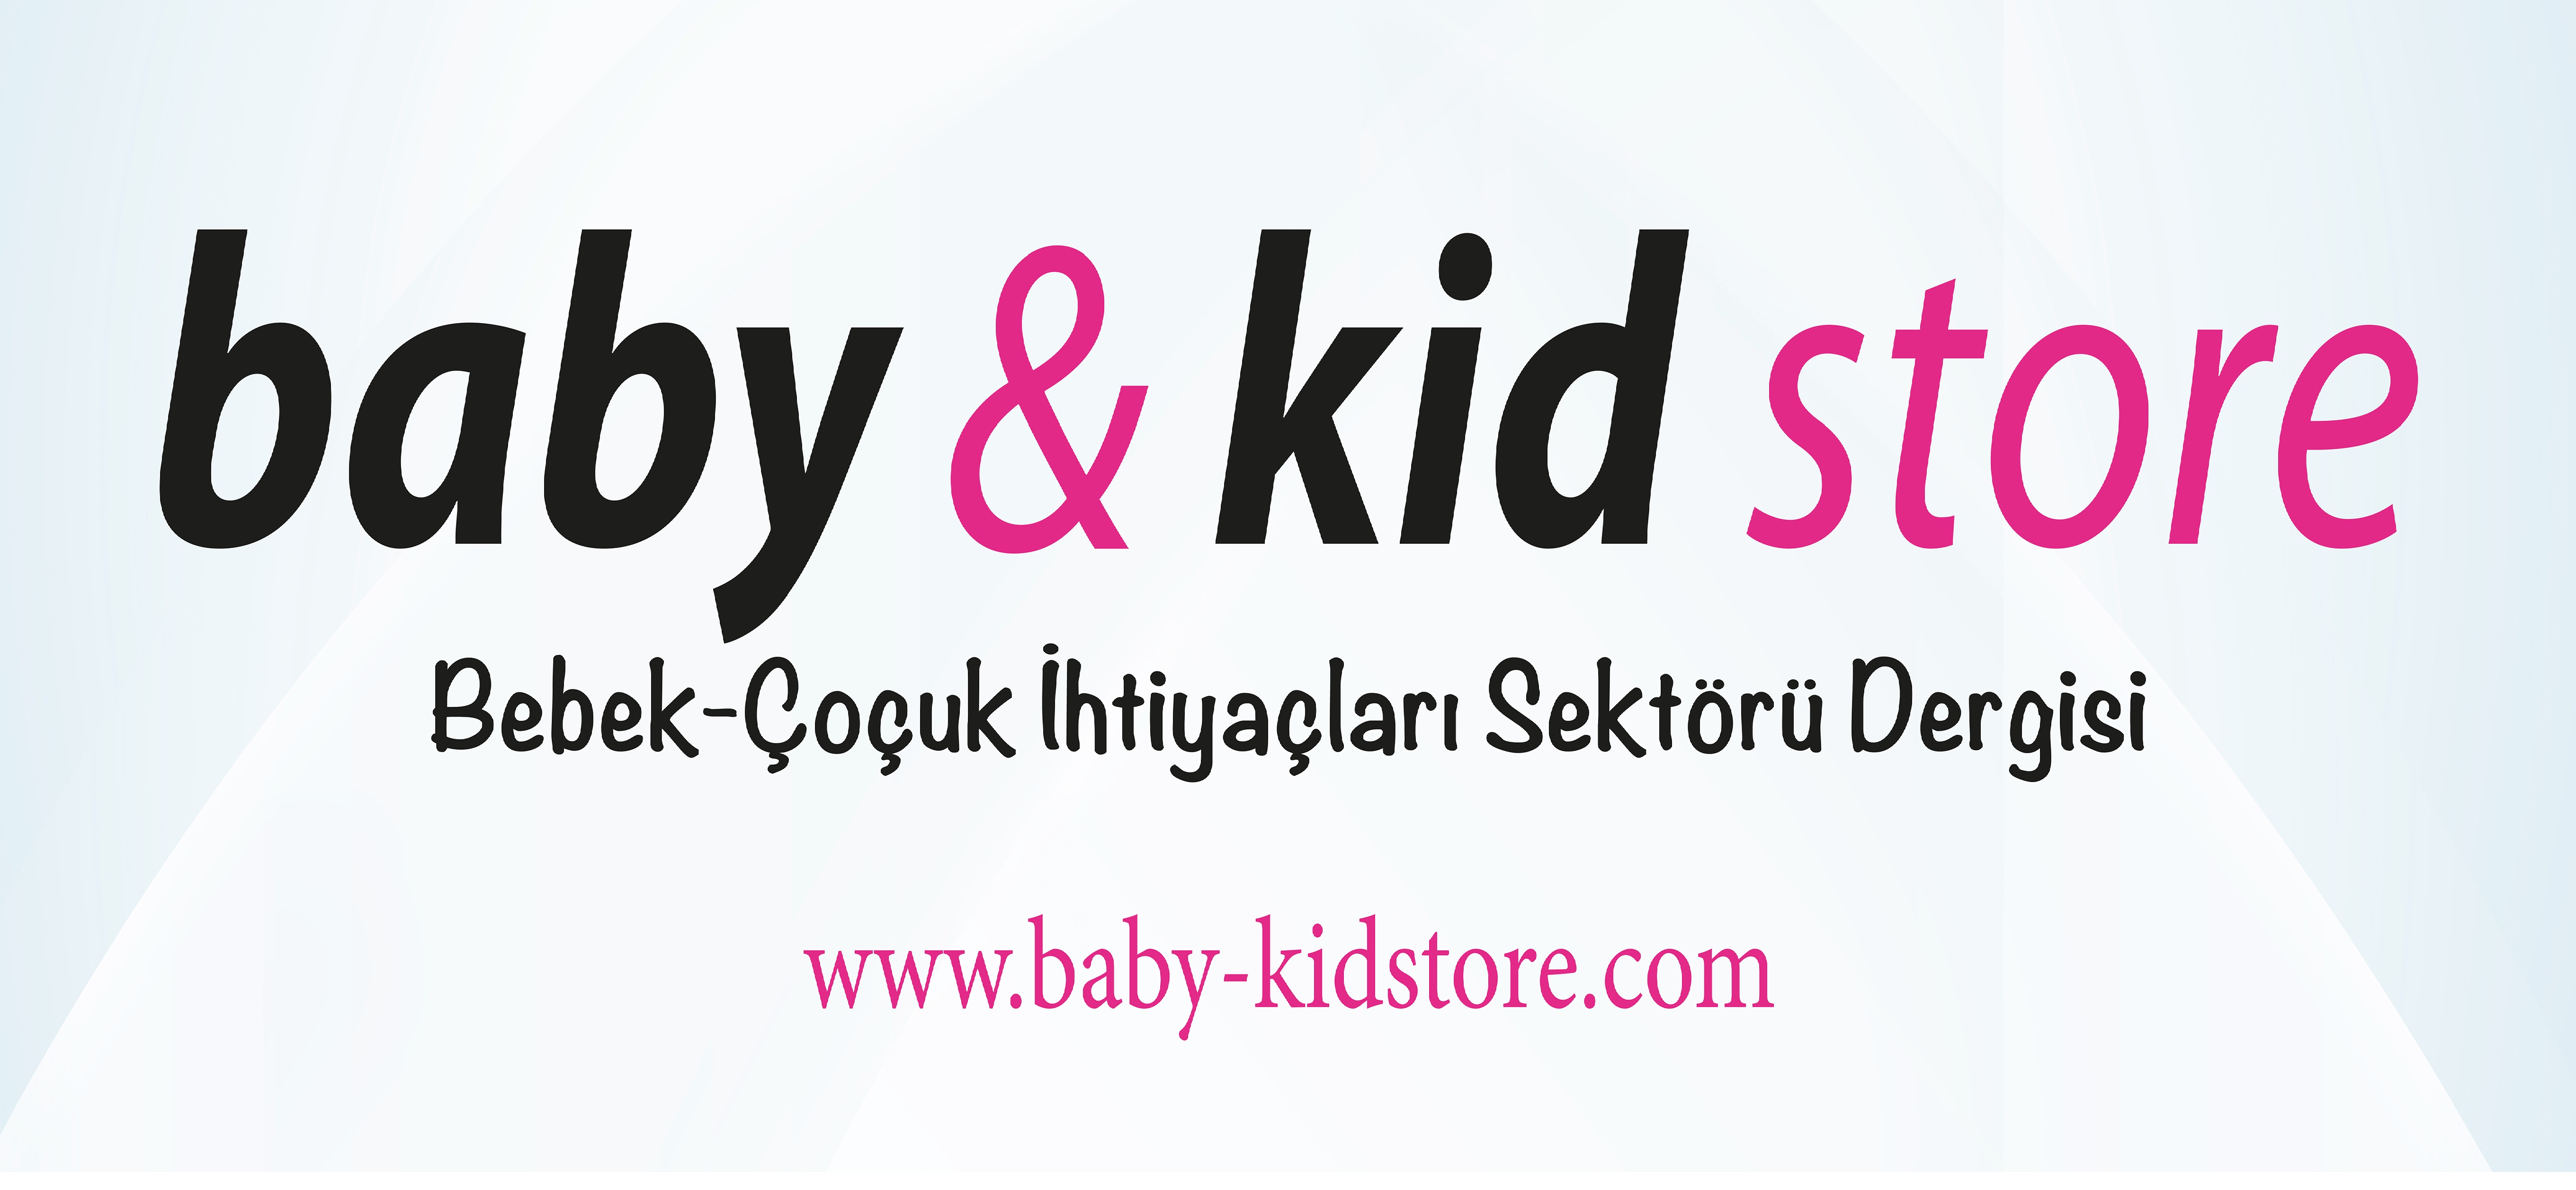 Bebek – Çocuk Sektörünün Tek İhracat Yayını; Baby & Kid Store